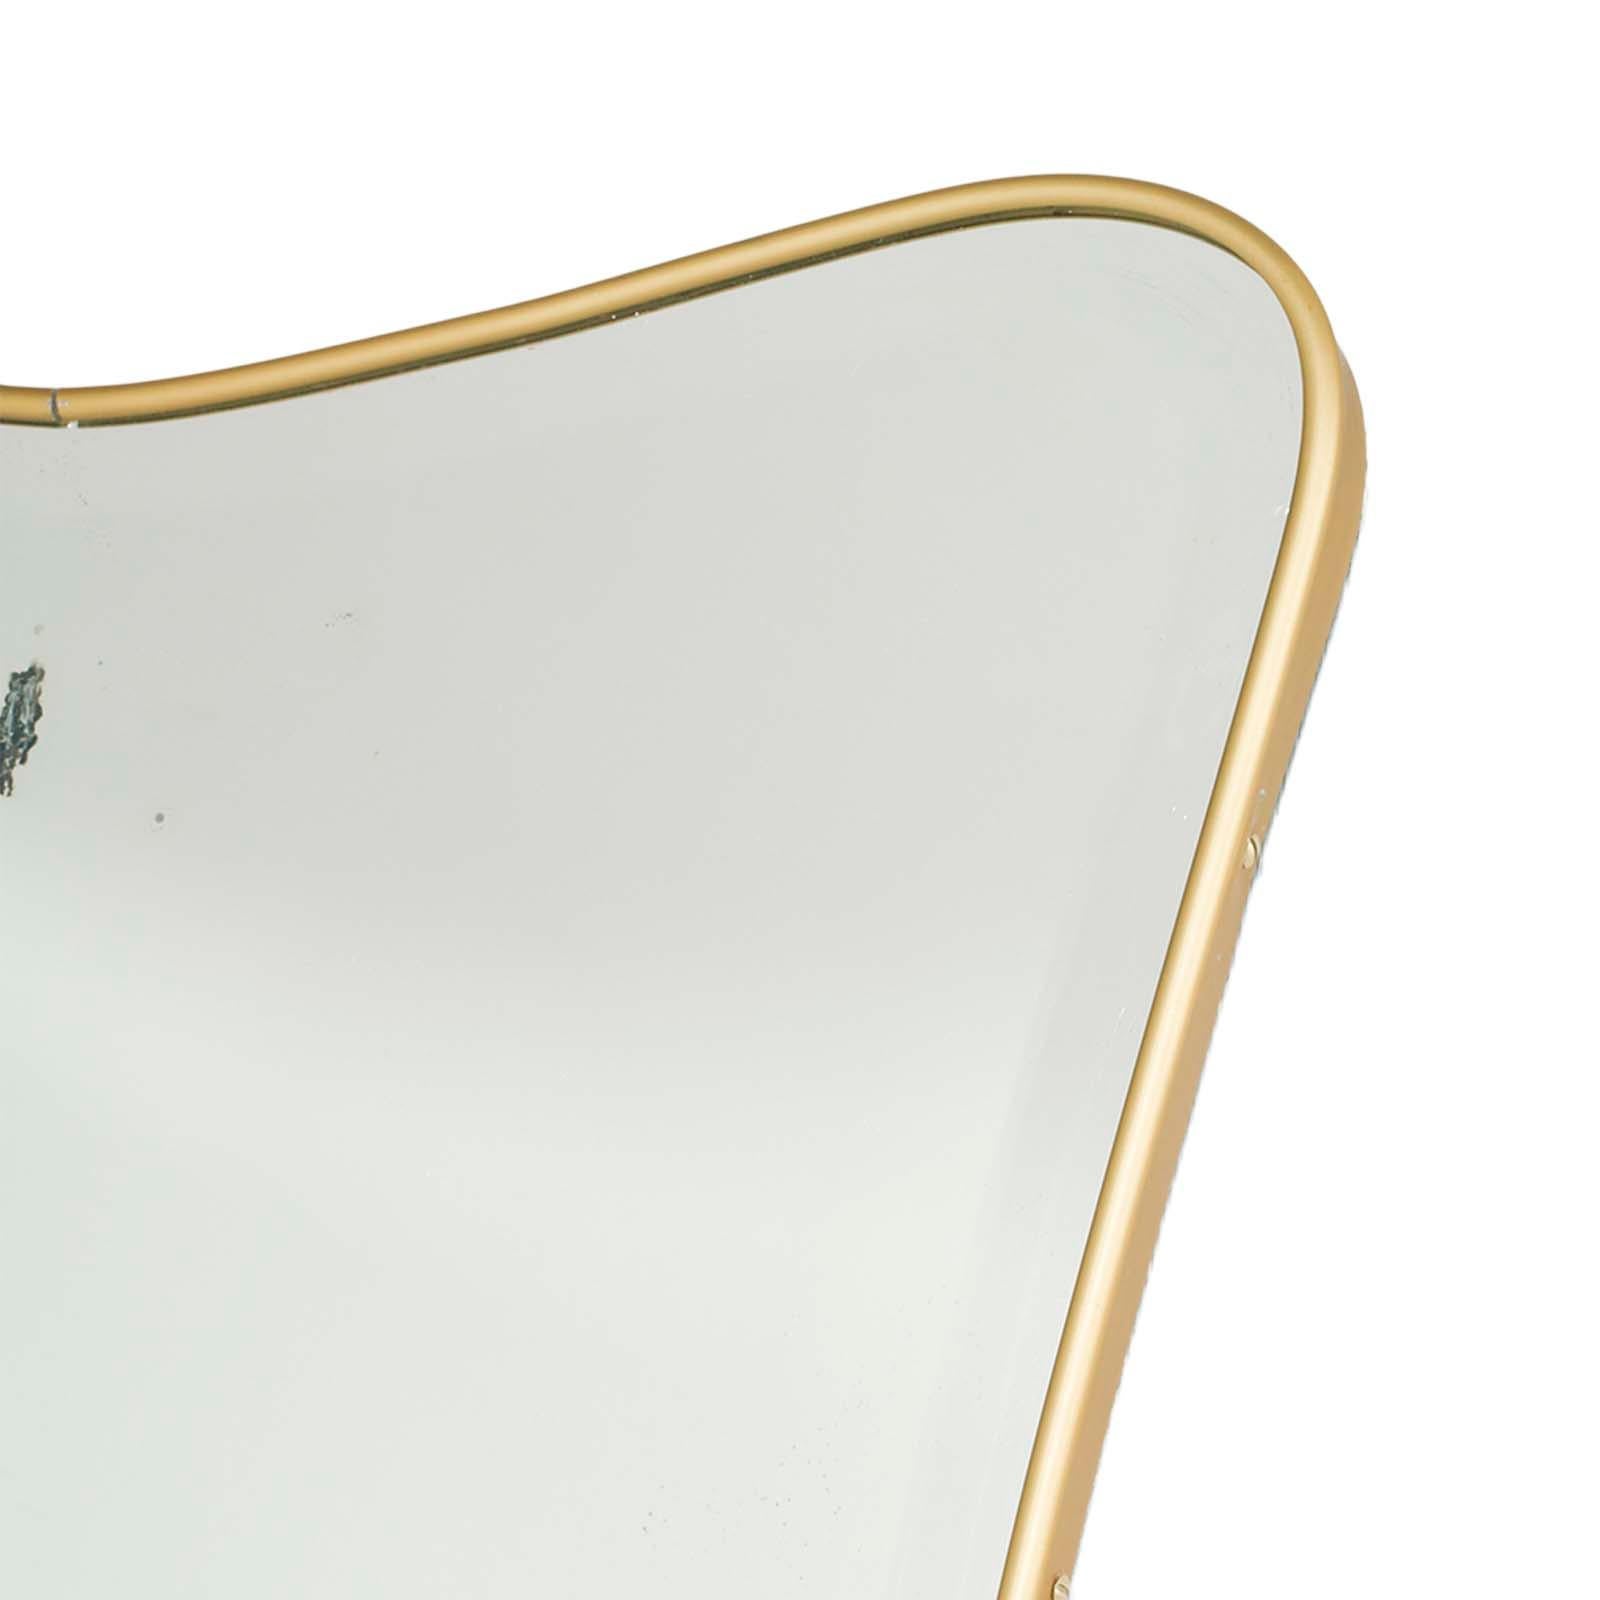 Miroir classique attribué par Gio Ponti, produit par Fontana Arte à partir des années 1940, avec miroir biseauté et cadre en métal doré.

Le miroir présente une imperfection dans l'argenture produite par le crochet d'attache arrière ; mais cela ne